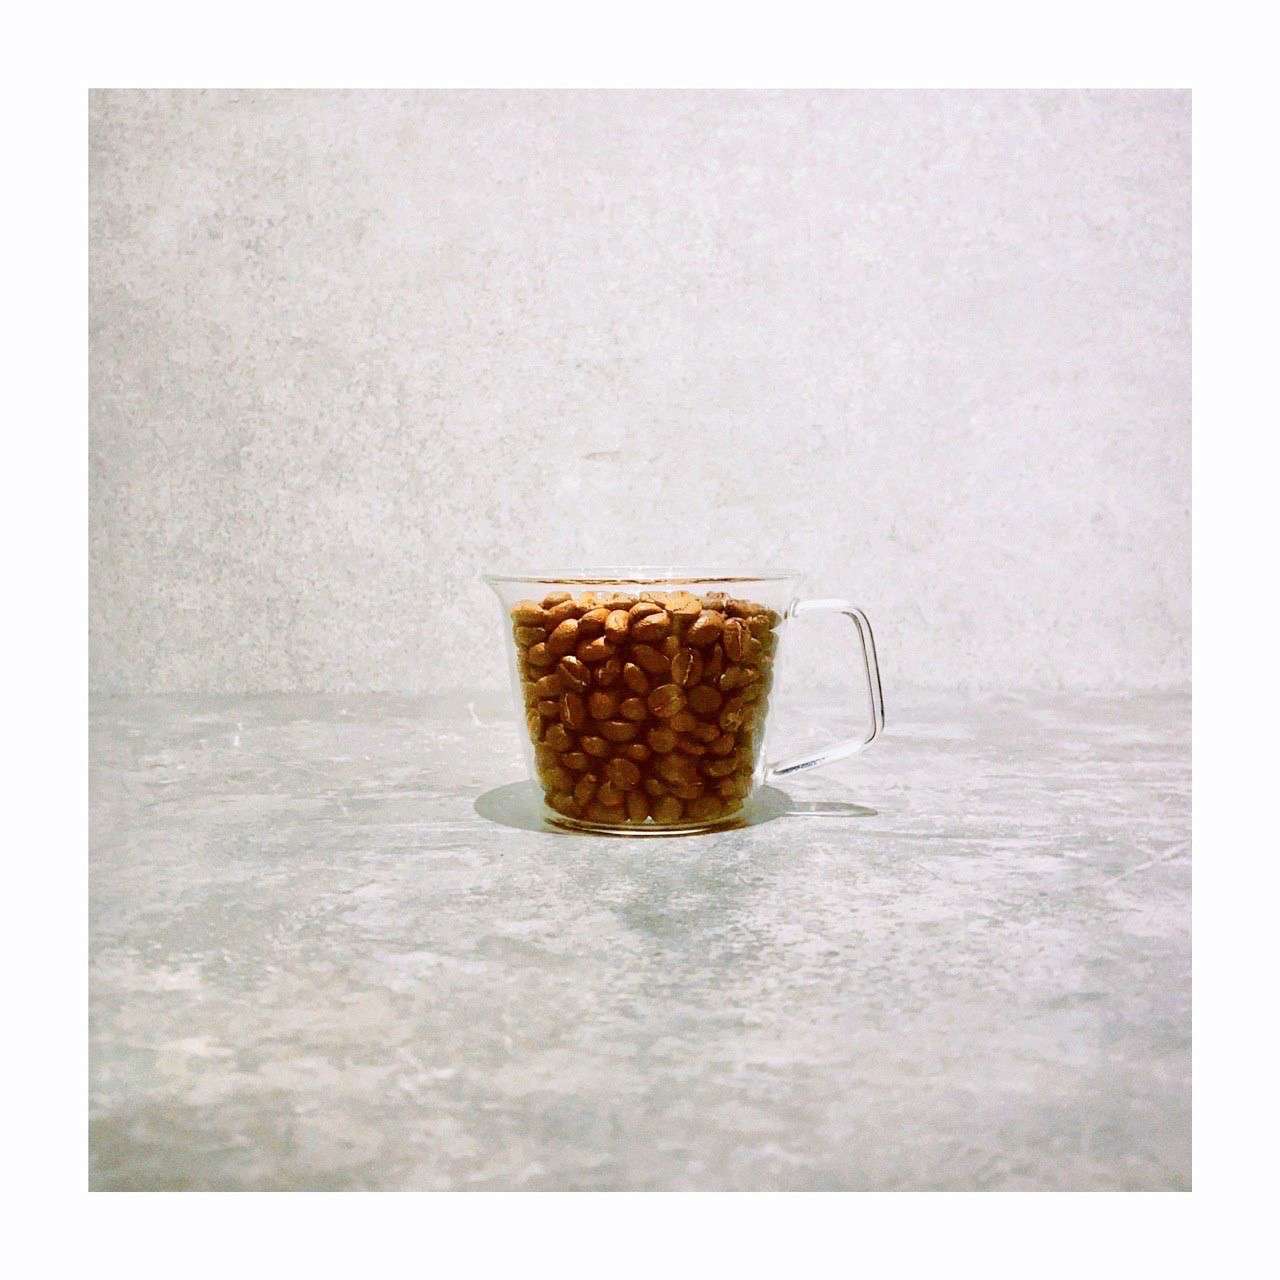 恵比寿クラスコーヒーは特別なコーヒー豆を使ってます